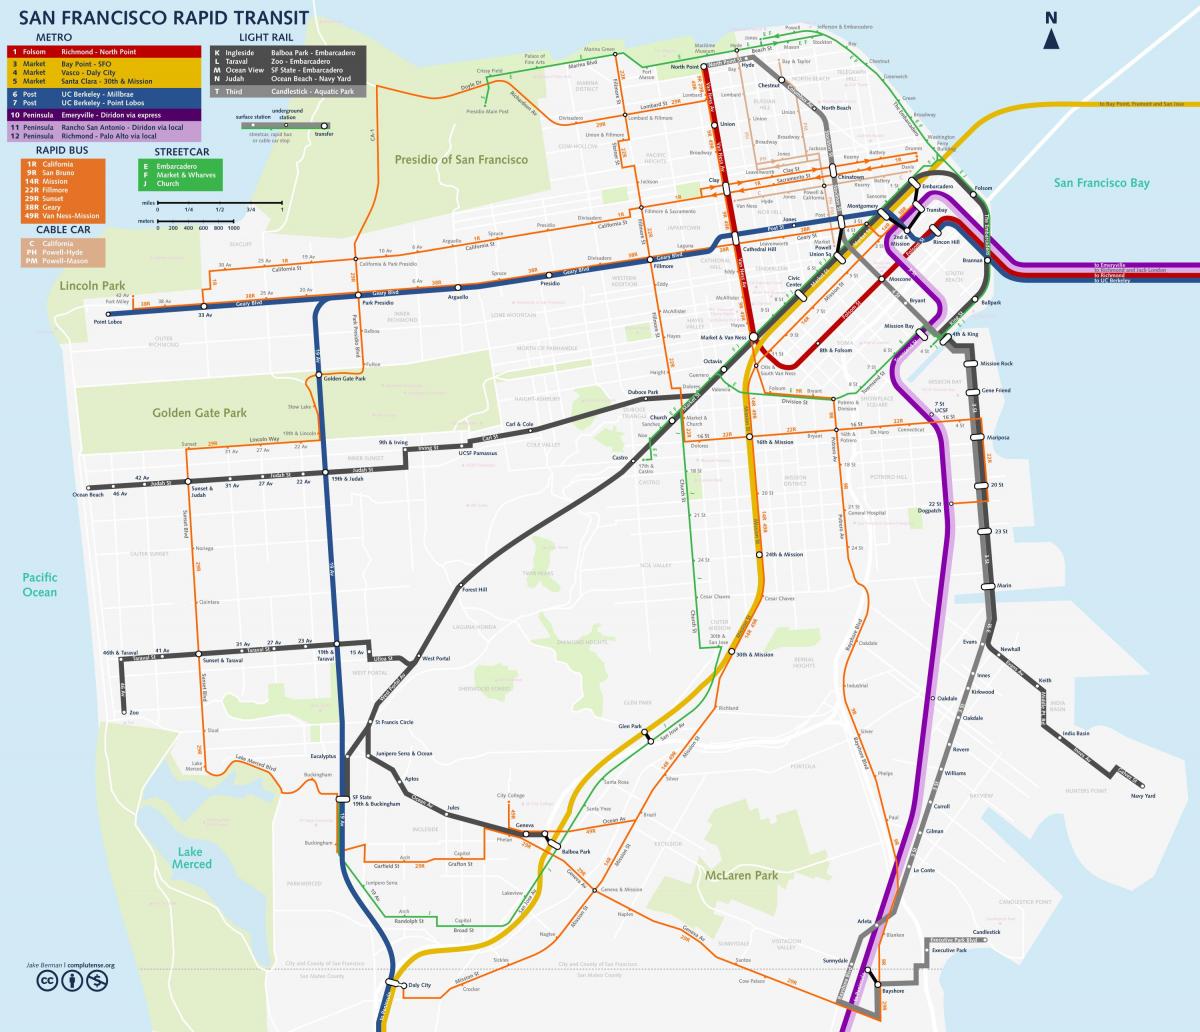 Zemljevid San Fran tranzitnega